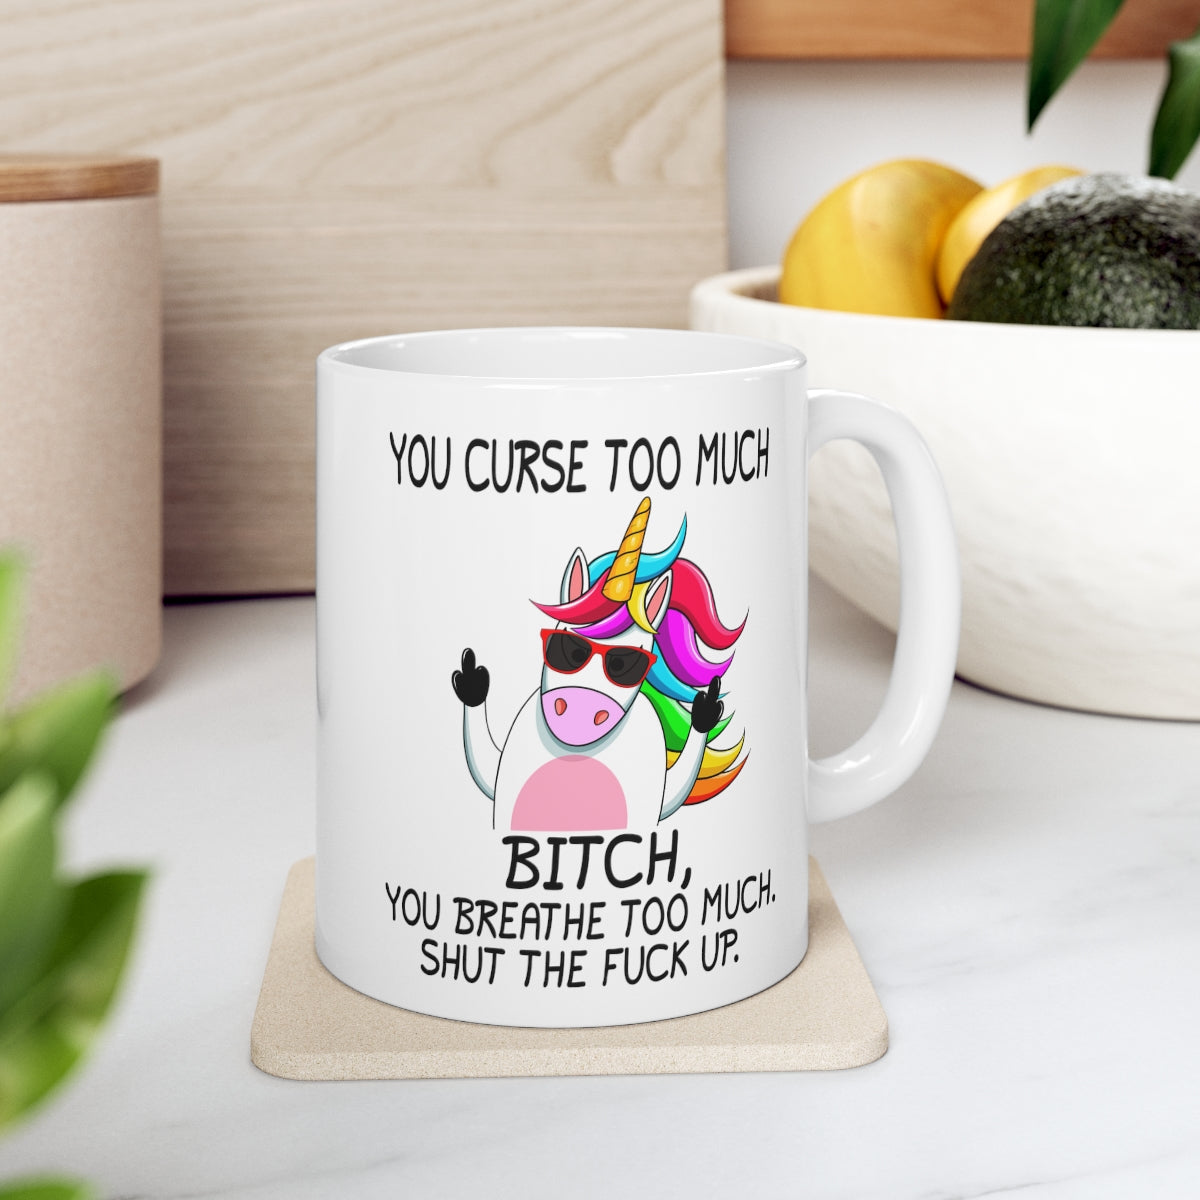 You Curse too Much Mug